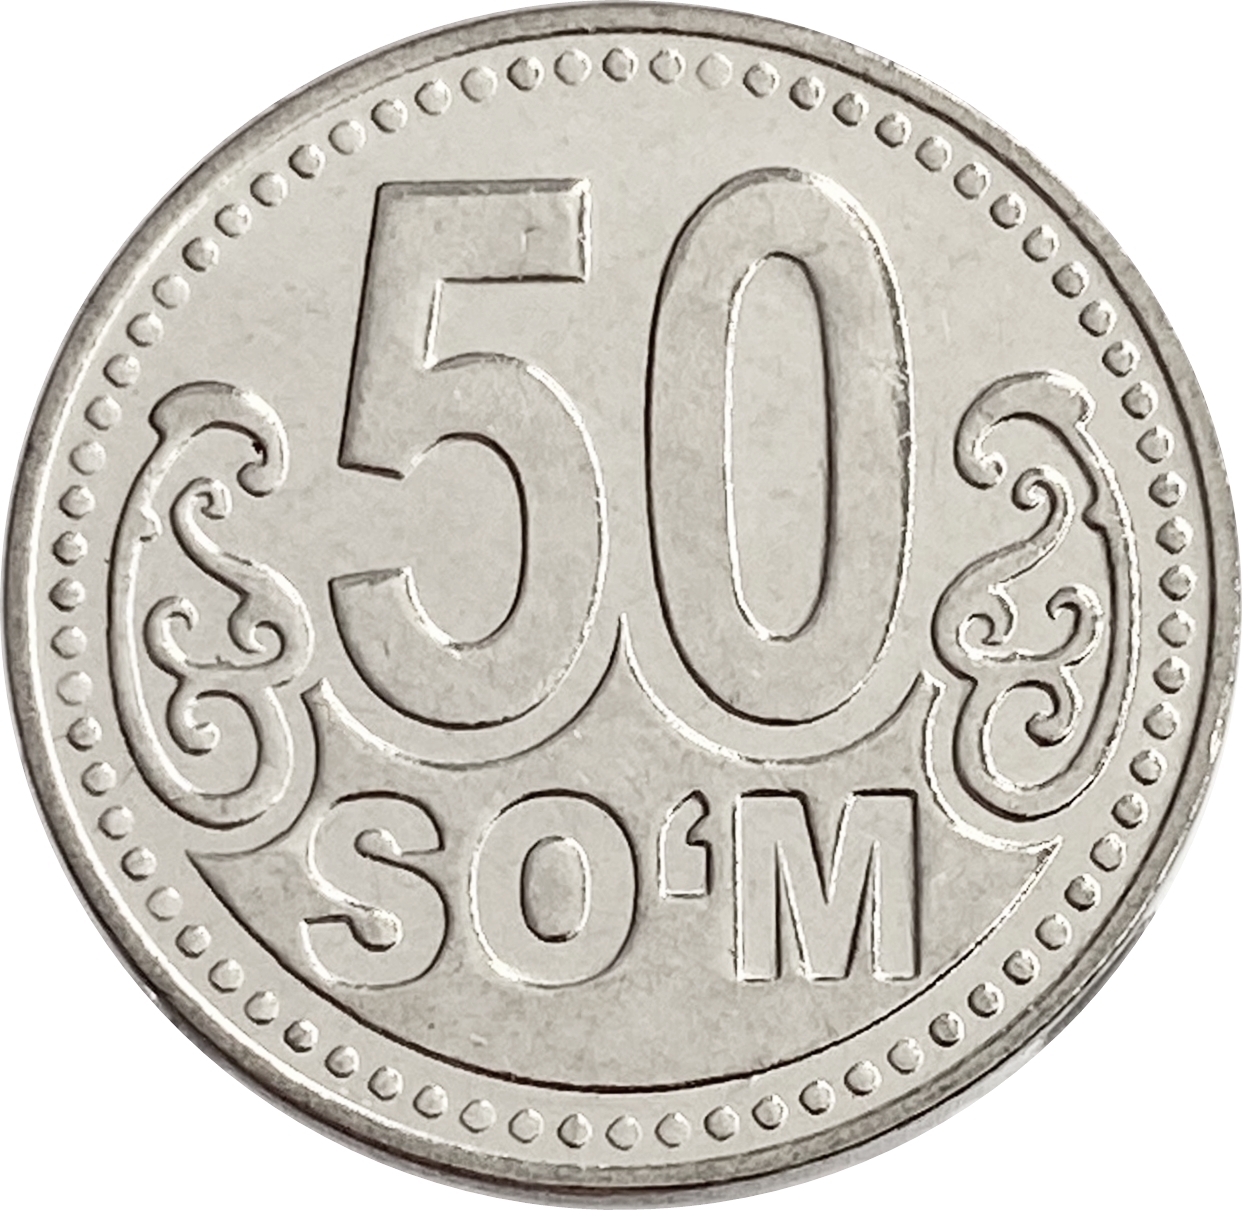 90 сум. Монета 50 сум. Монета 5 сум. Монета 50 тийин 1994 года Узбекистан. Монеты Узбекистана 2022.